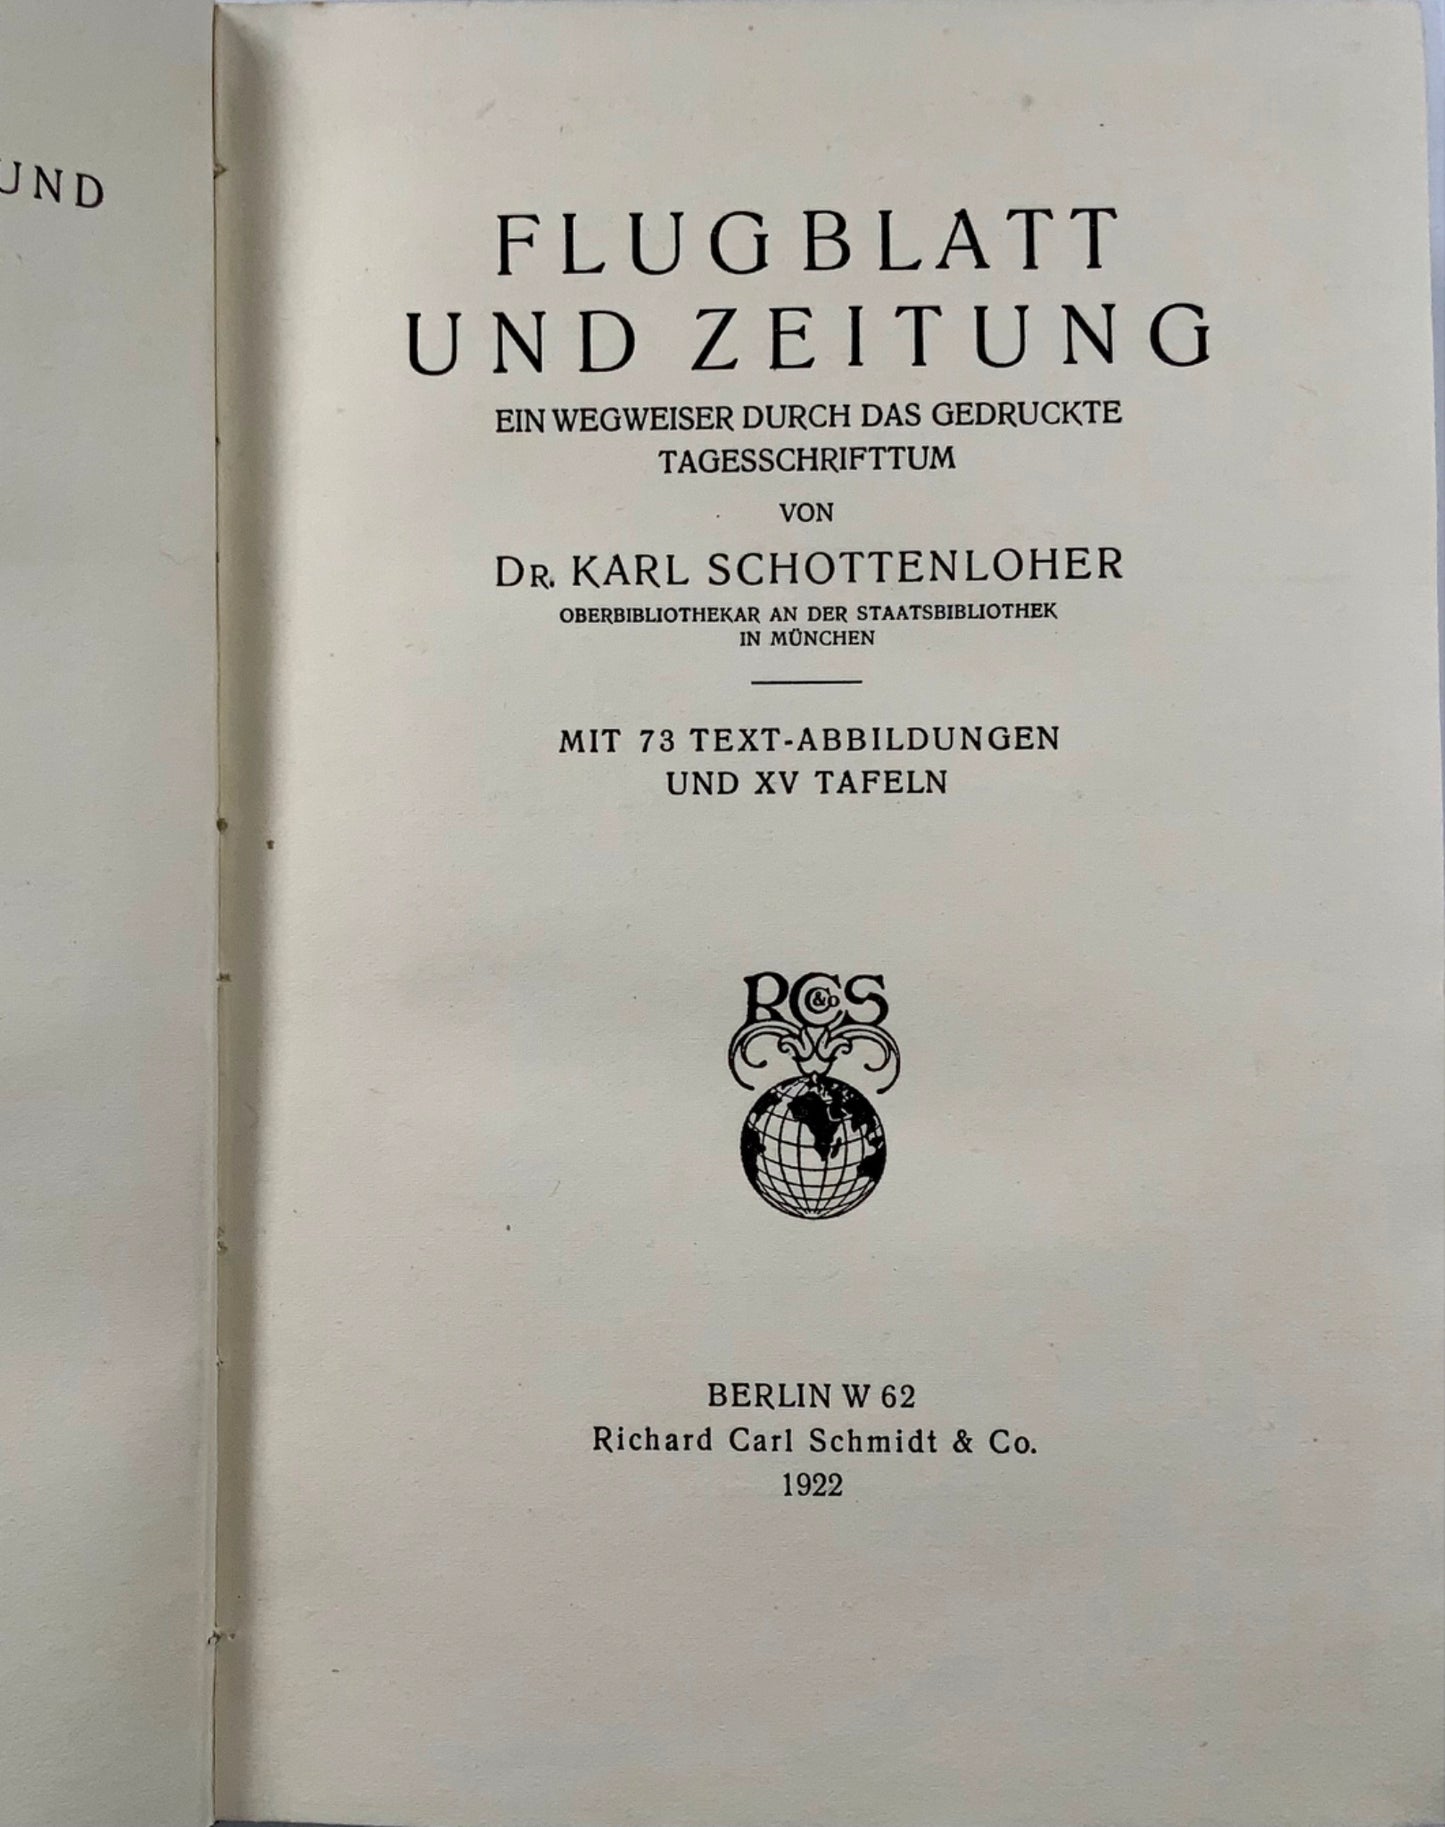 1922 Storia delle bordate e dei giornali tedeschi. Libro